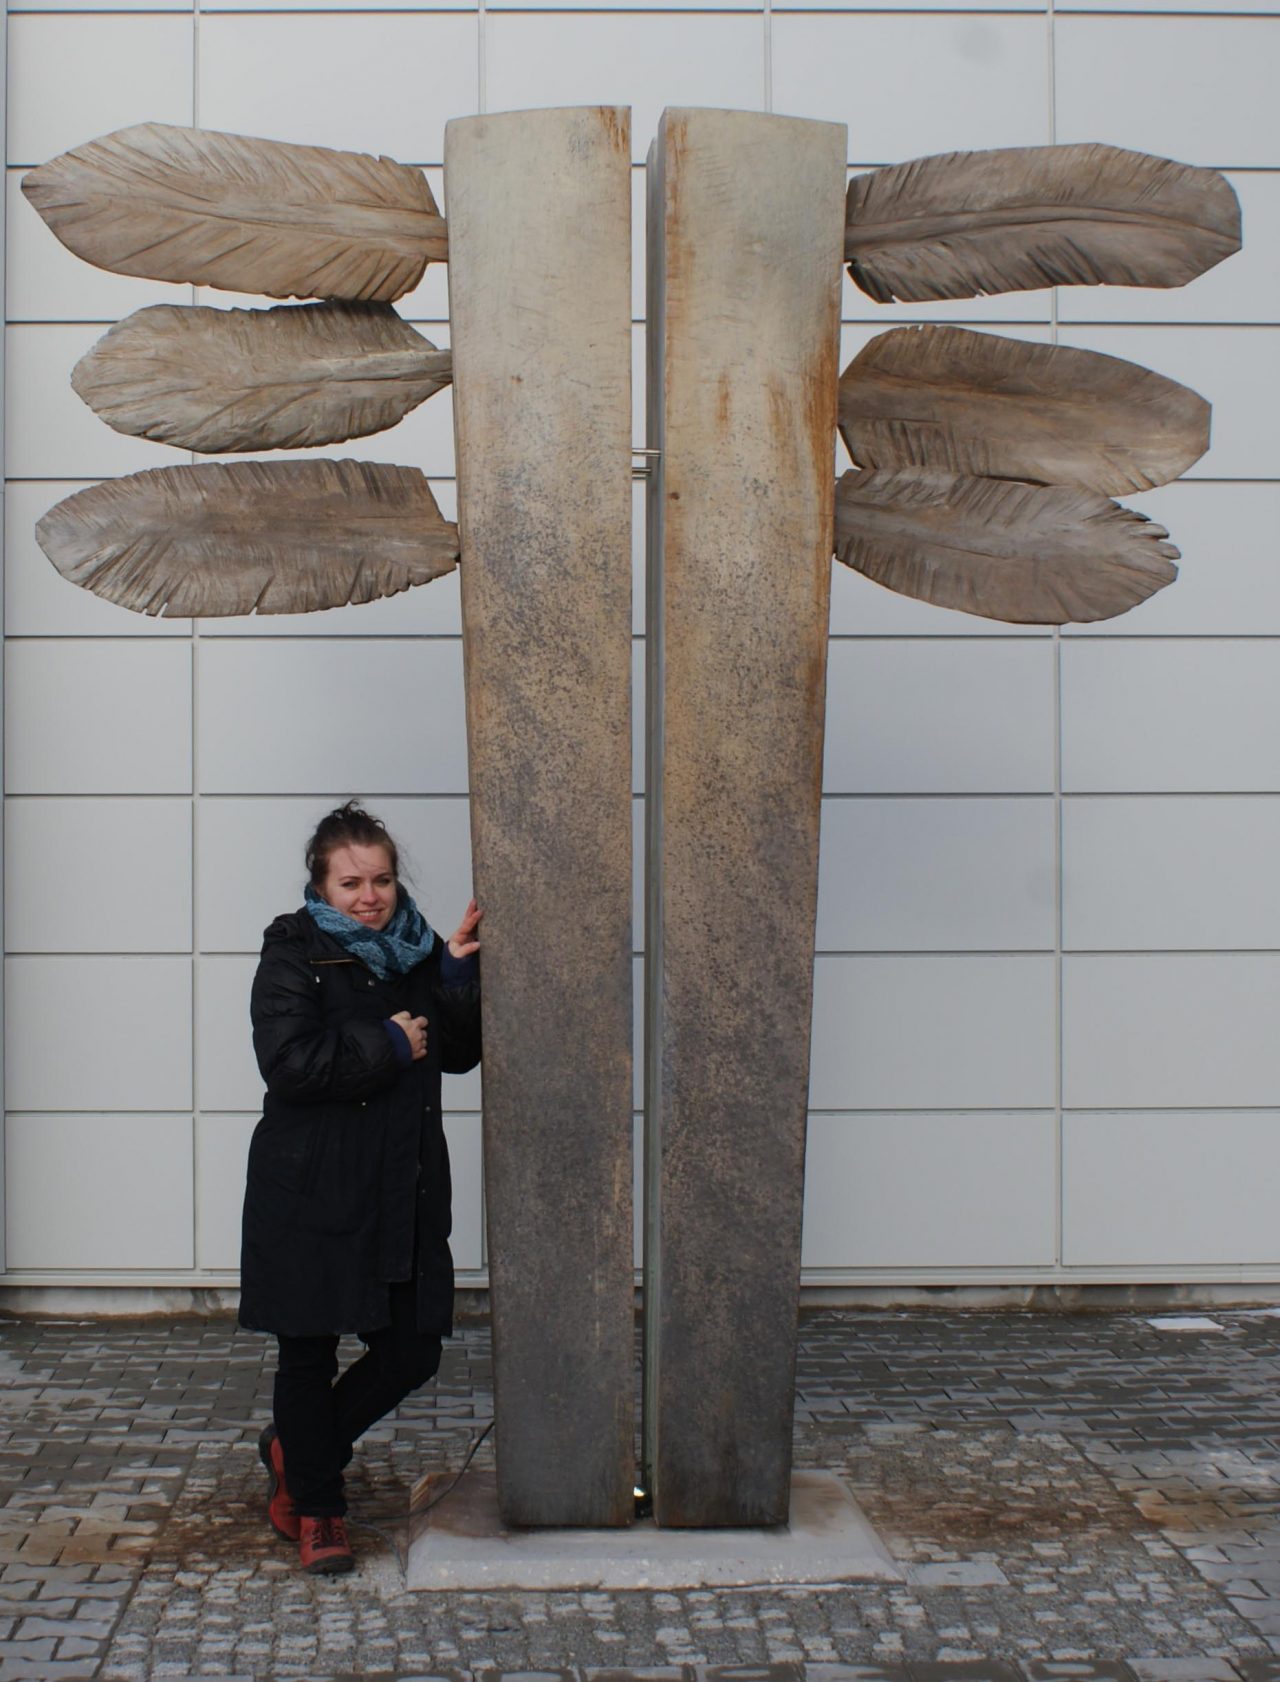 Adriana Majdzińska with his sculpture, ICARUS- wood, light, 2013, Koscierzyna, Poland